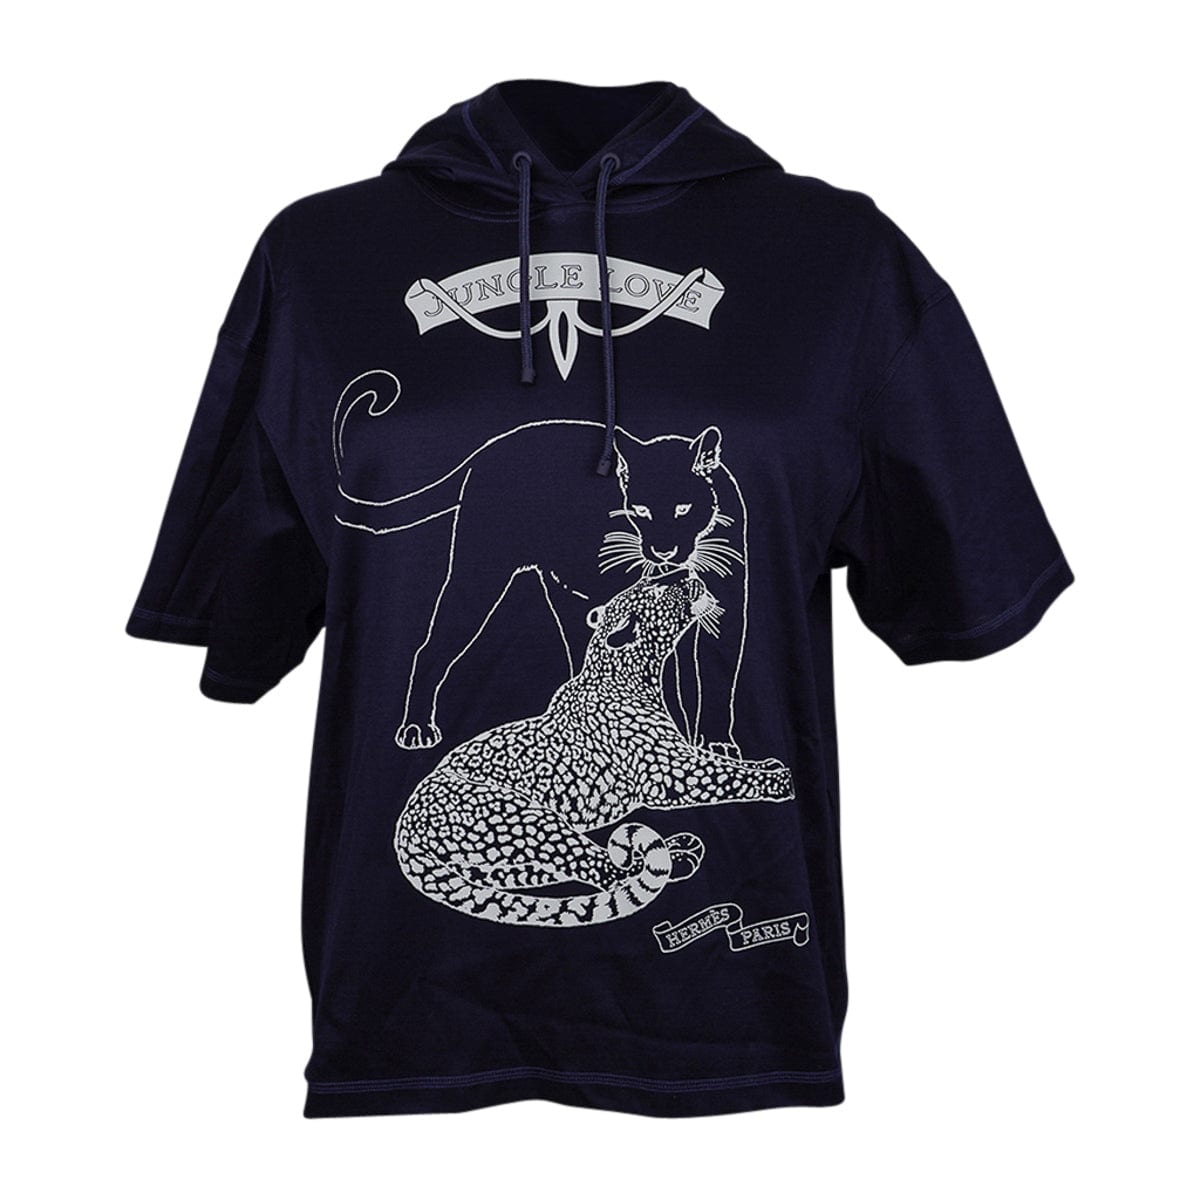 Hermes T-Shirt Hoodie Jungle Love Marine / White 40 / 8